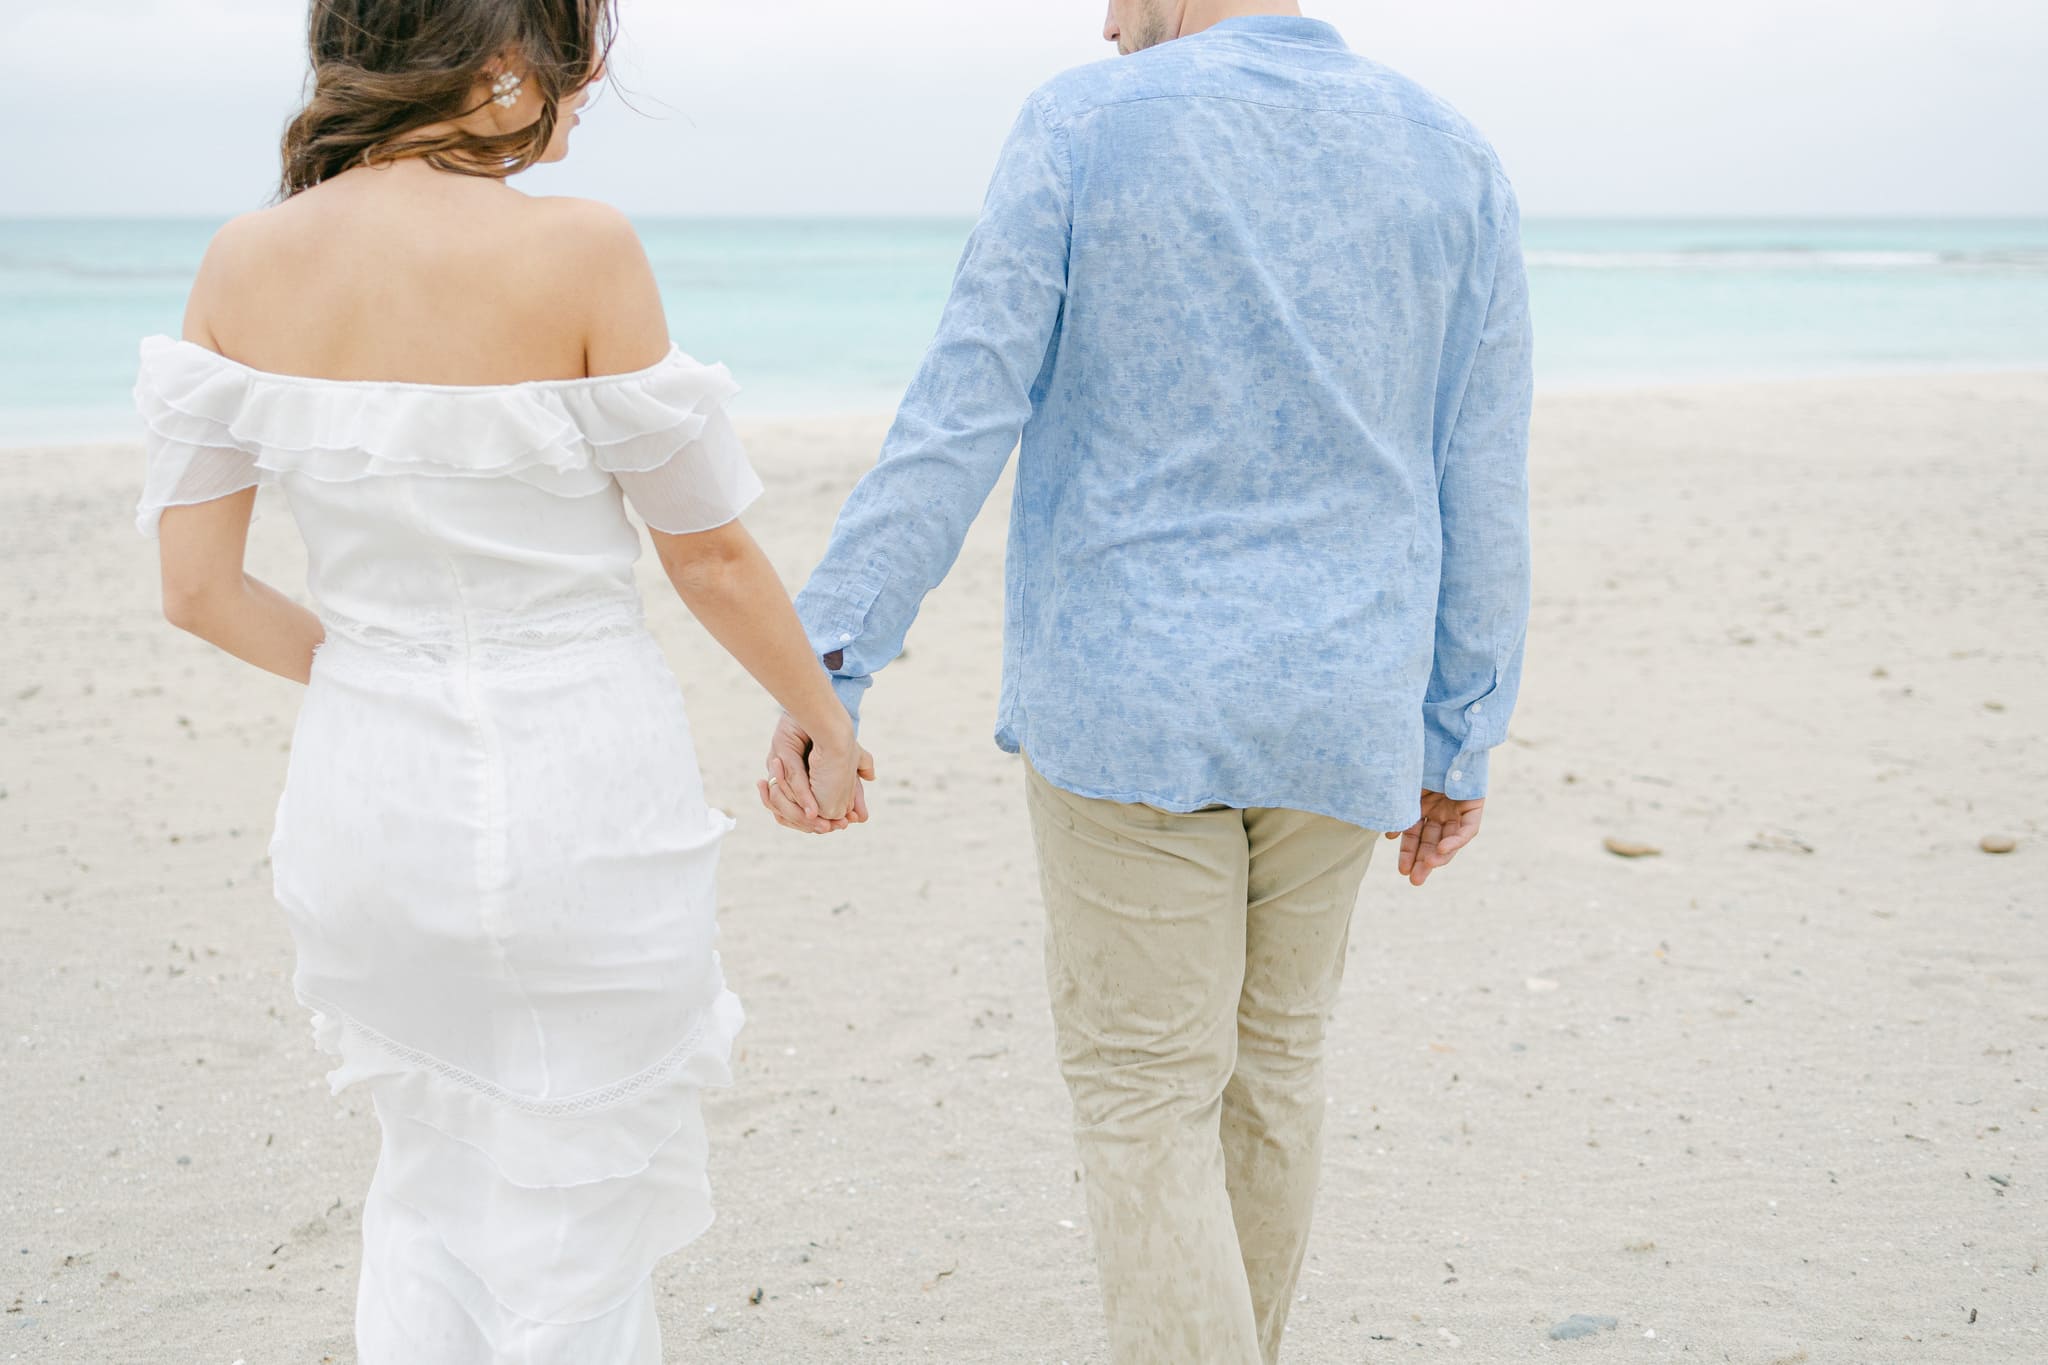 Brautpaar spaziert Hand in Hand am Strand, die Braut in einem weißen, schulterfreien Kleid und der Bräutigam in einem leichten blauen Hemd und beigen Hosen, mit Blick auf das ruhige Meer im Hintergrund.